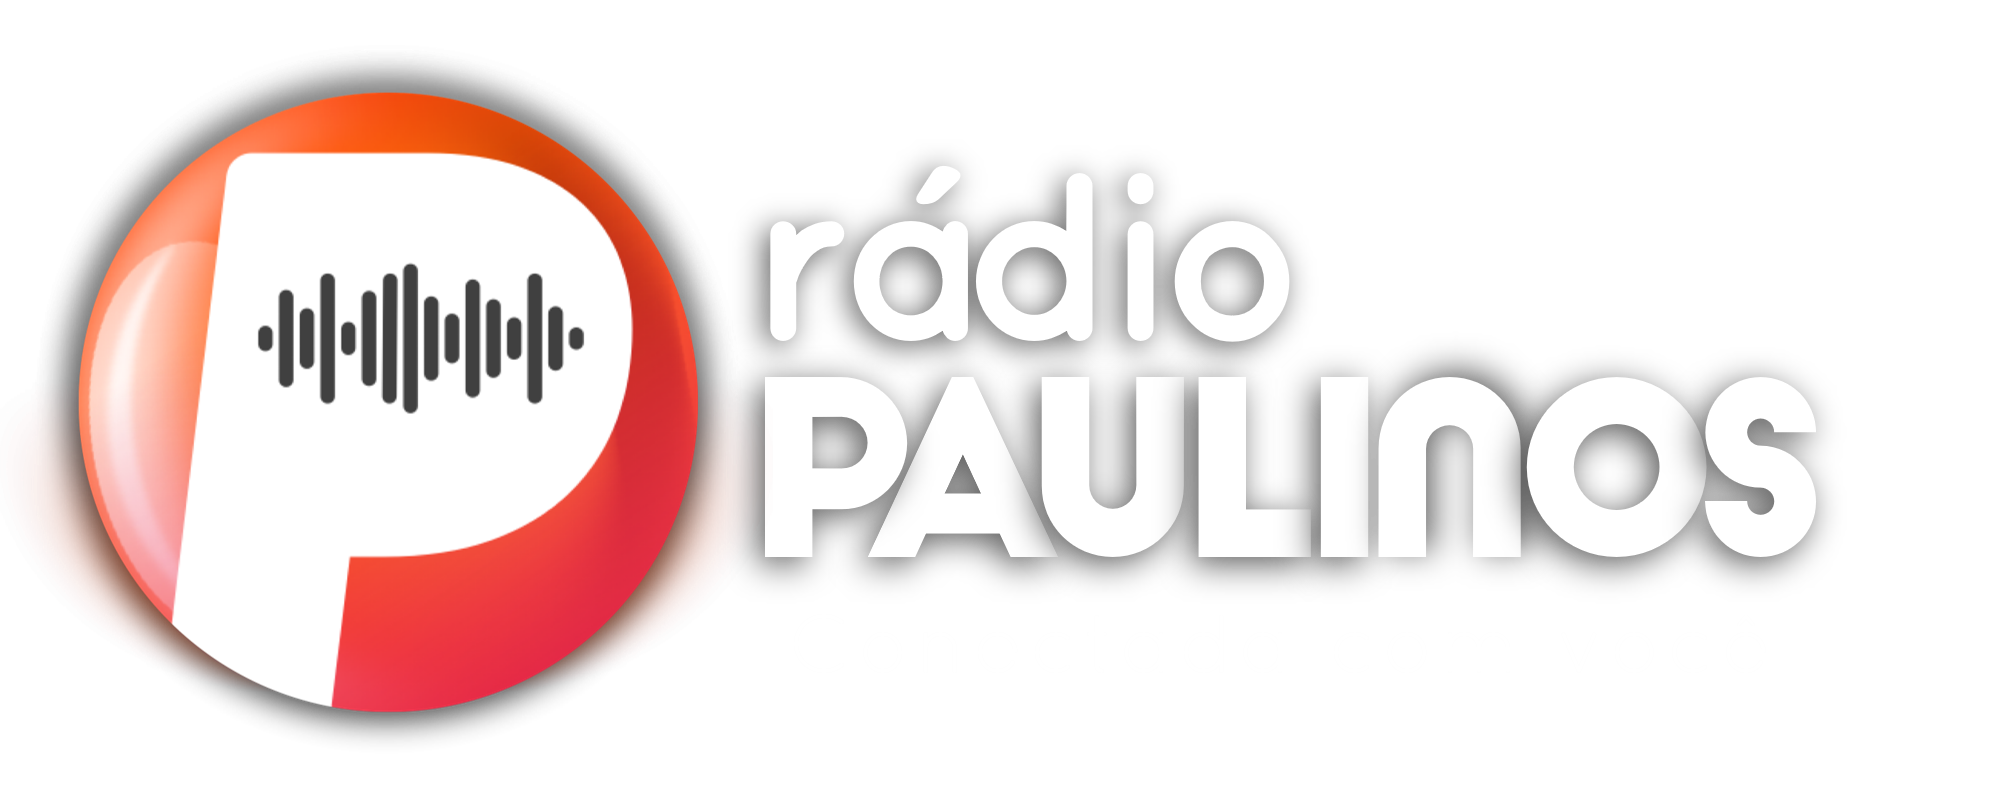 Rádio Paulinos